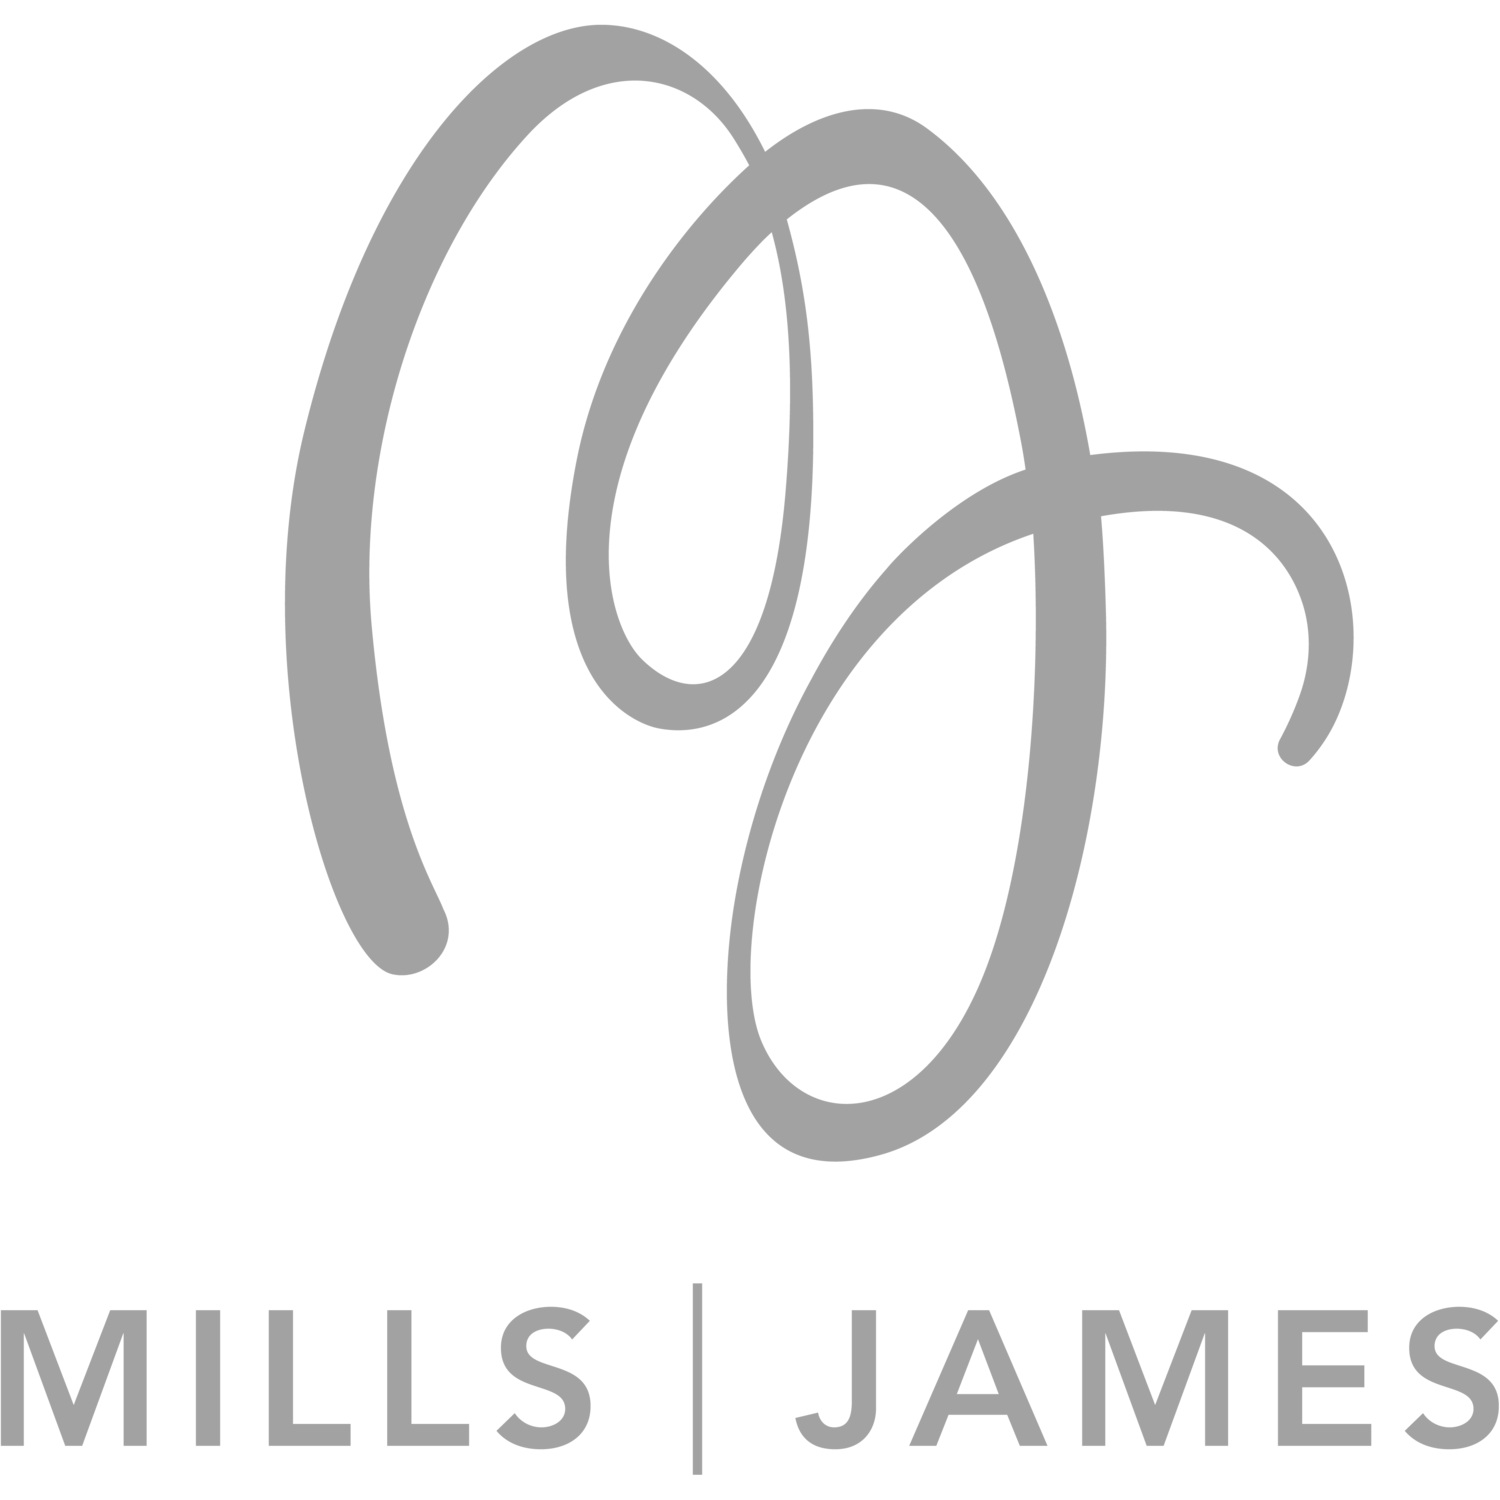 Mills James